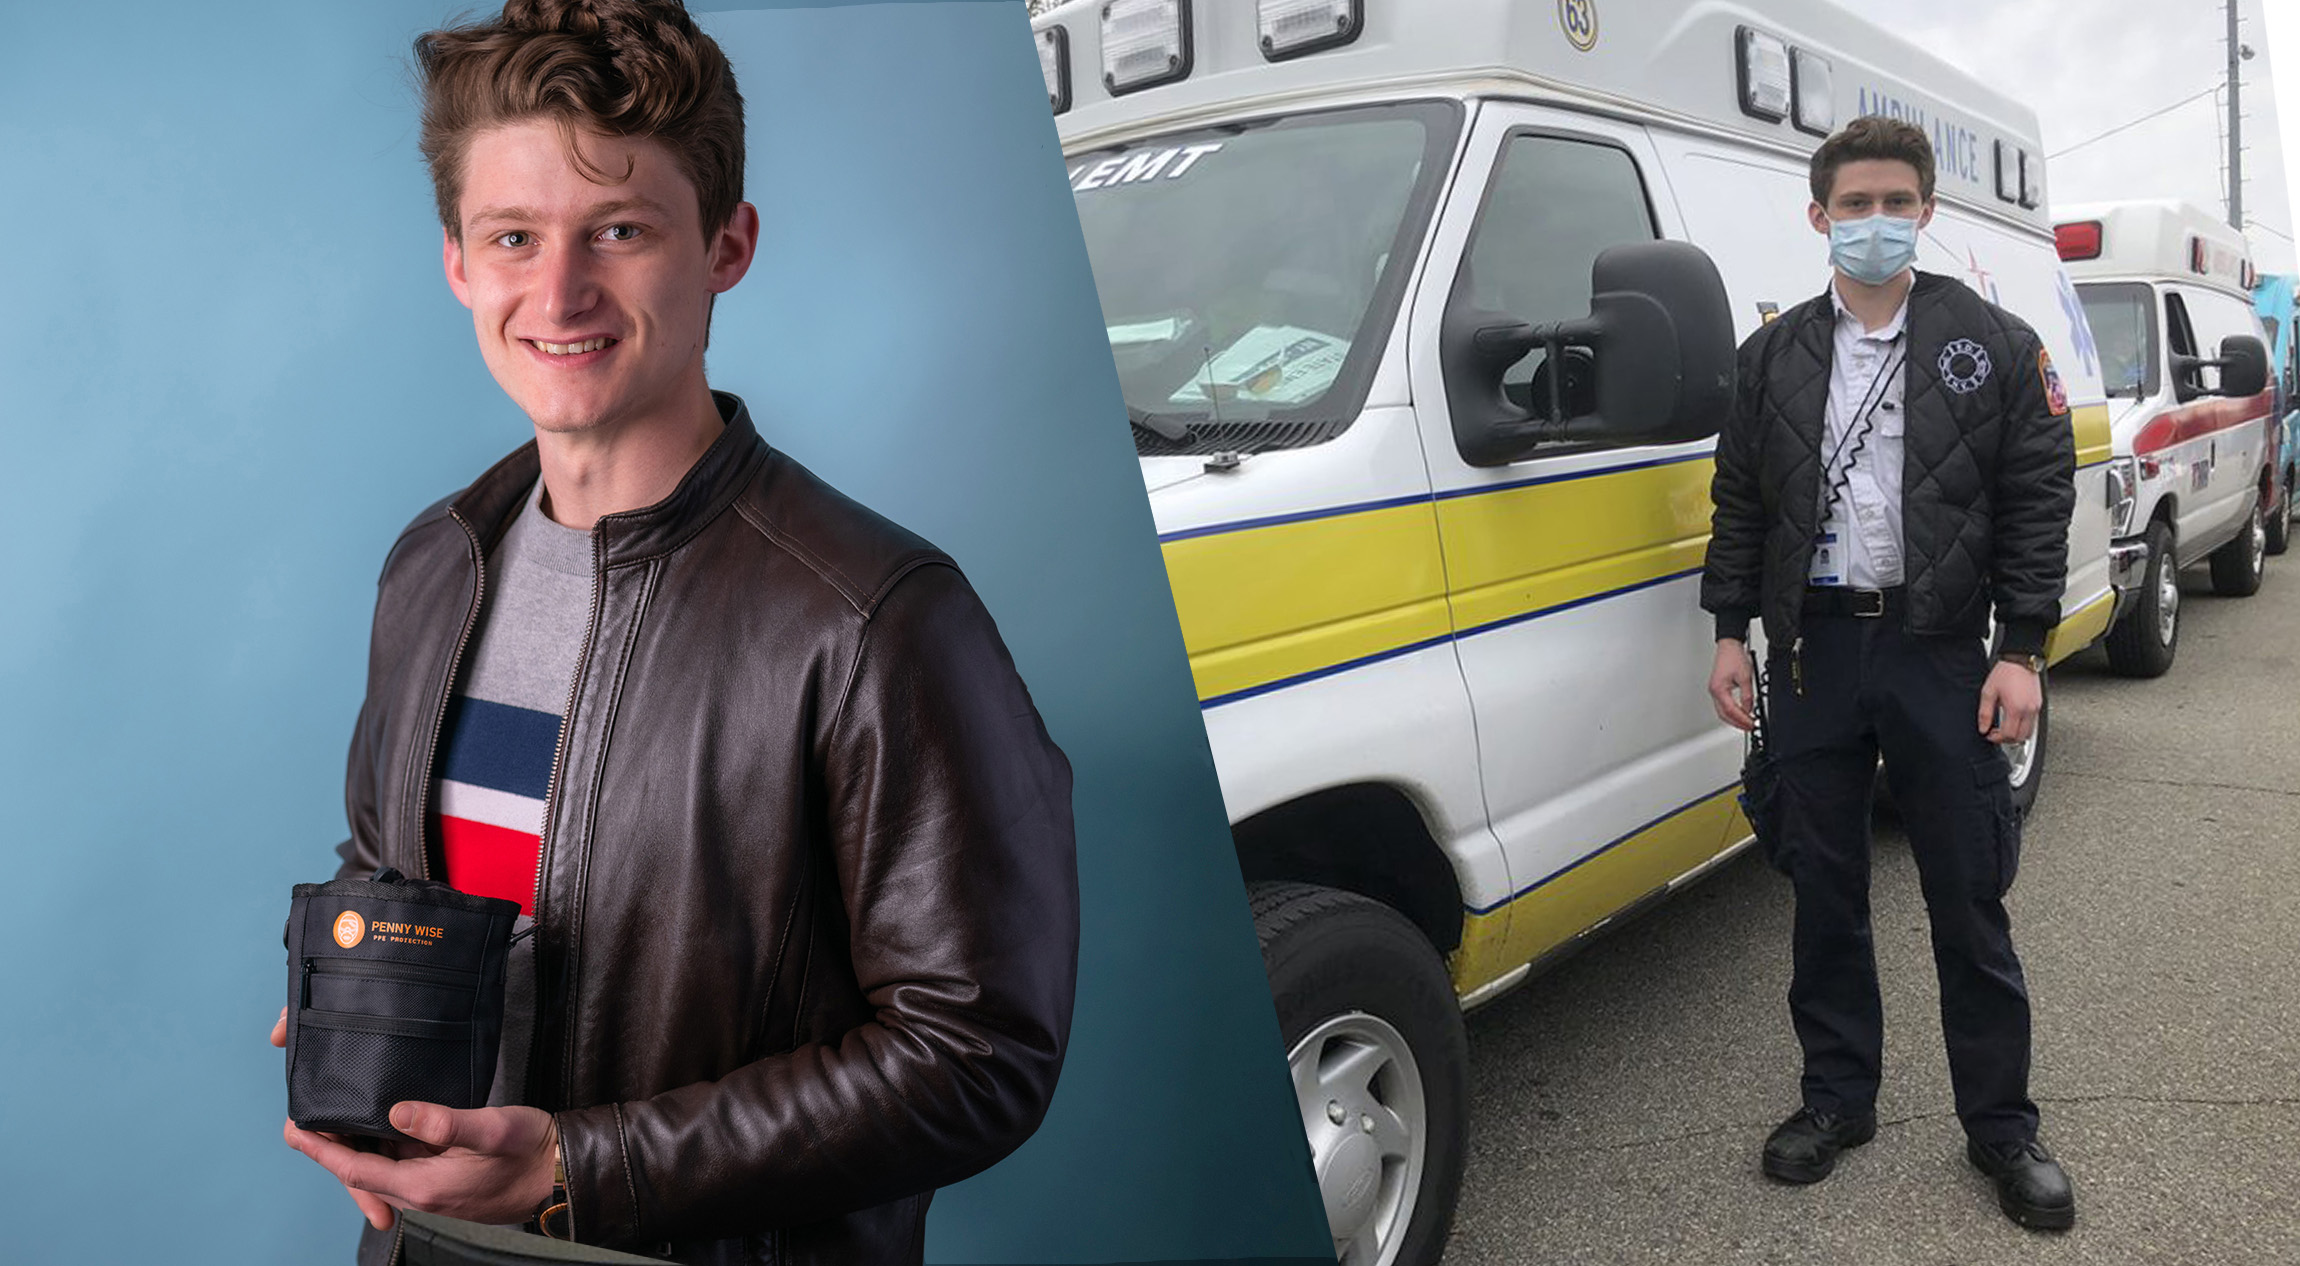 照片右边, Ethan Lutz standing in front of ambulance; photo at left, 伊森拿着个人防护用品